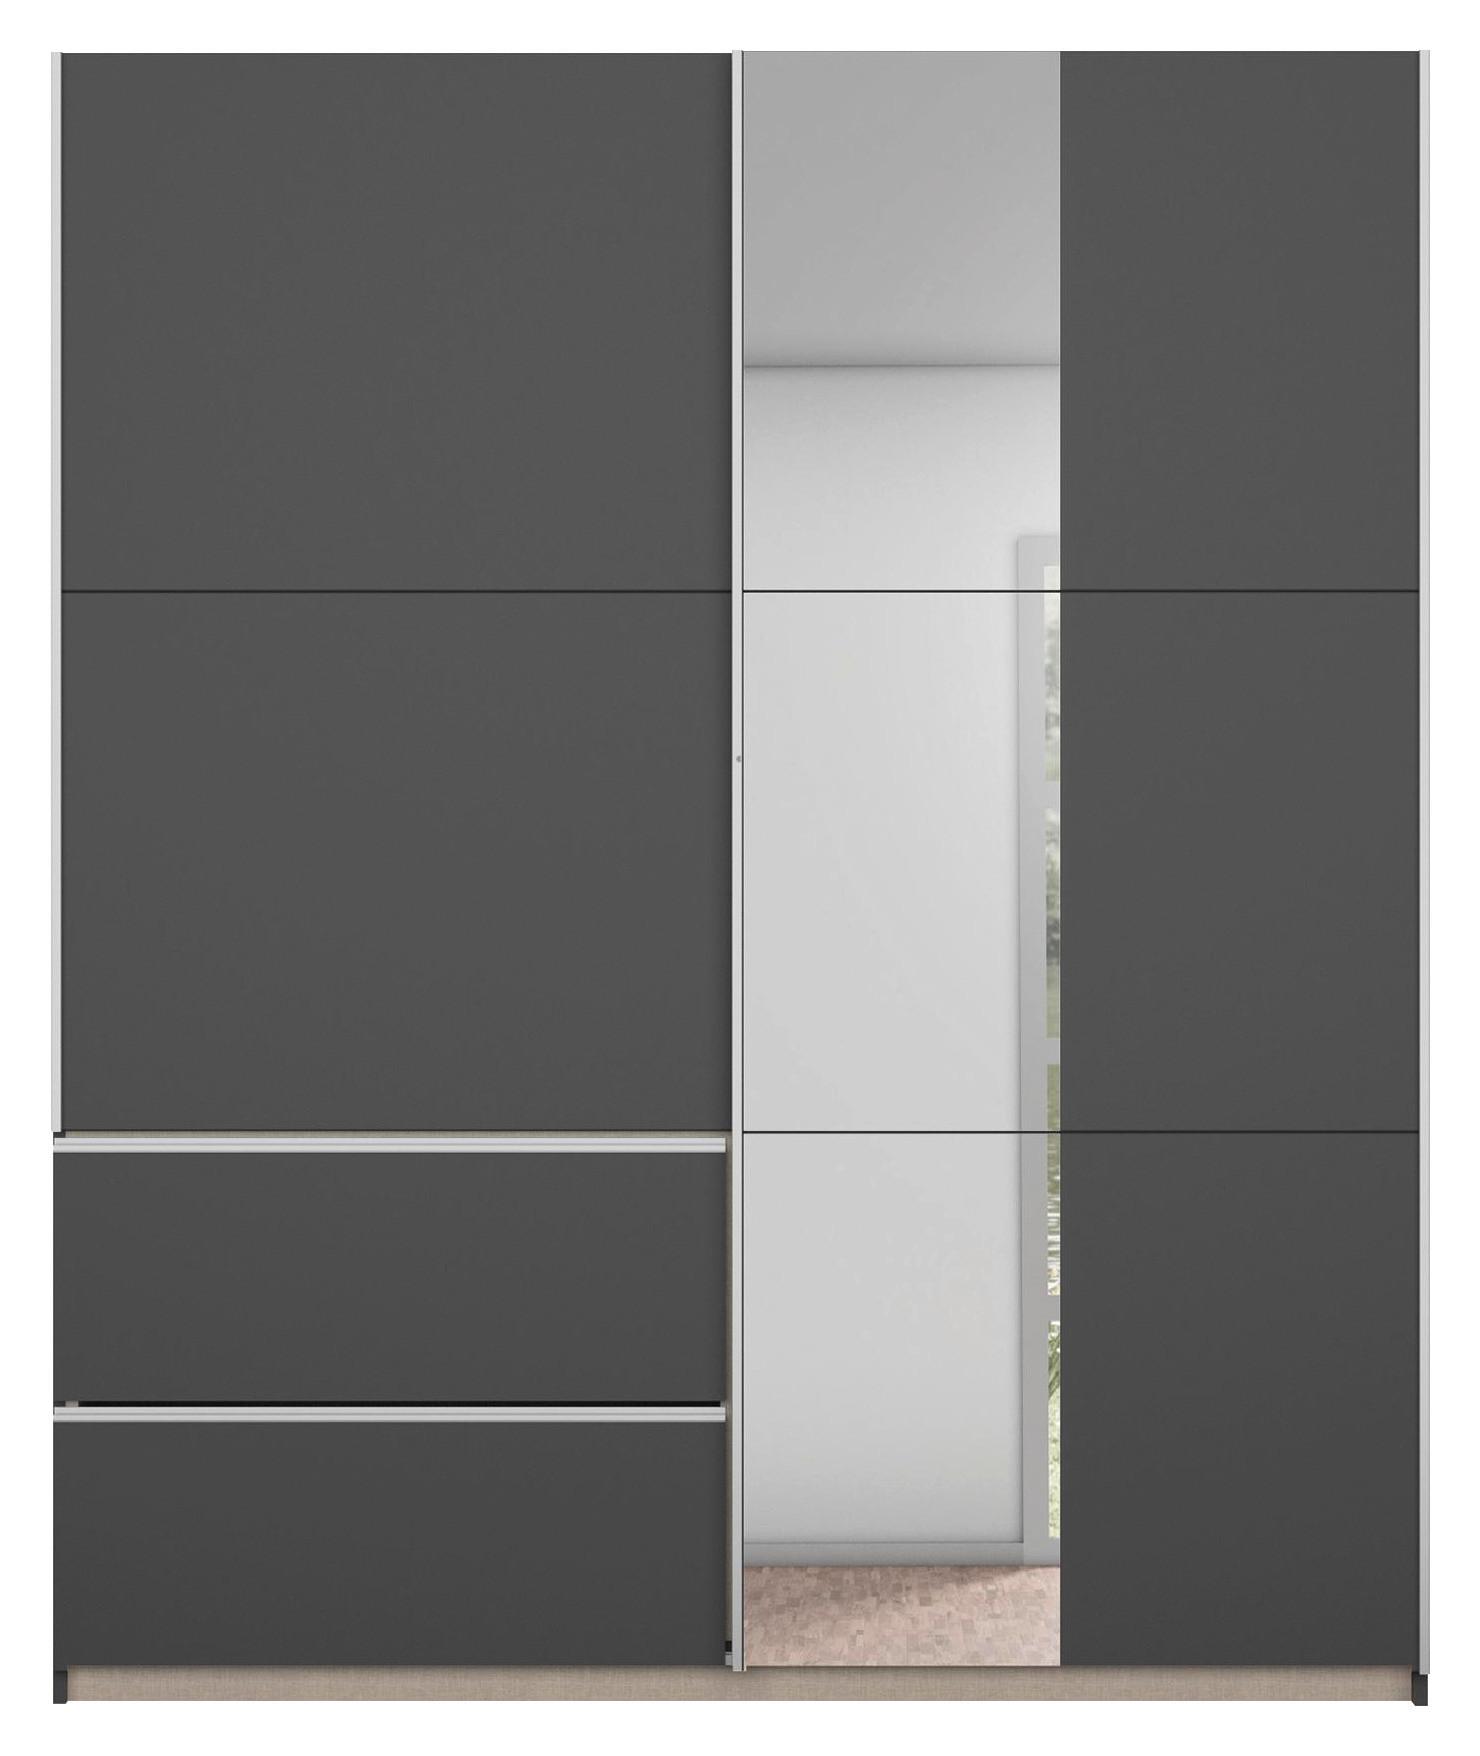 Šatní Skříň Se Zrcadlem Sevilla, Šedá 175cm - šedá/barvy hliníku, Konvenční, kov/kompozitní dřevo (175/210/59cm) - Modern Living